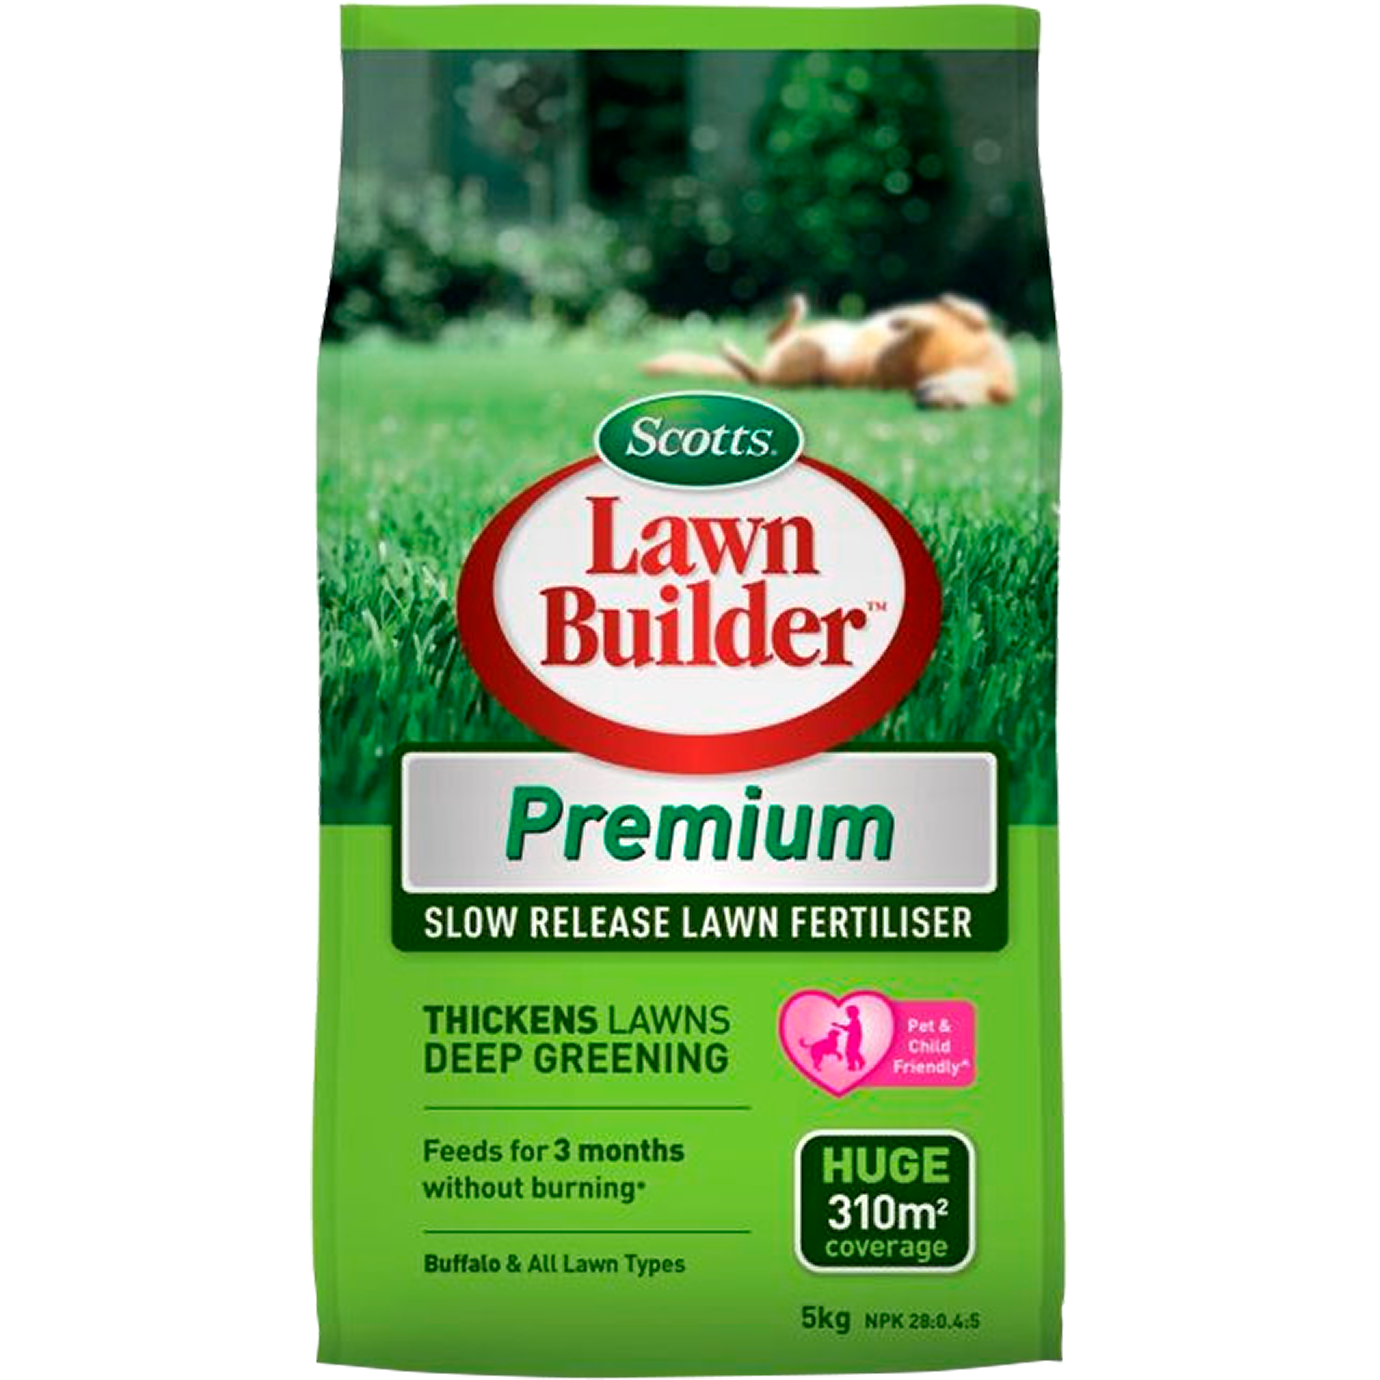 scotts-lawn-builder-premium-slow-release-lawn-fertiliser-5kg-love